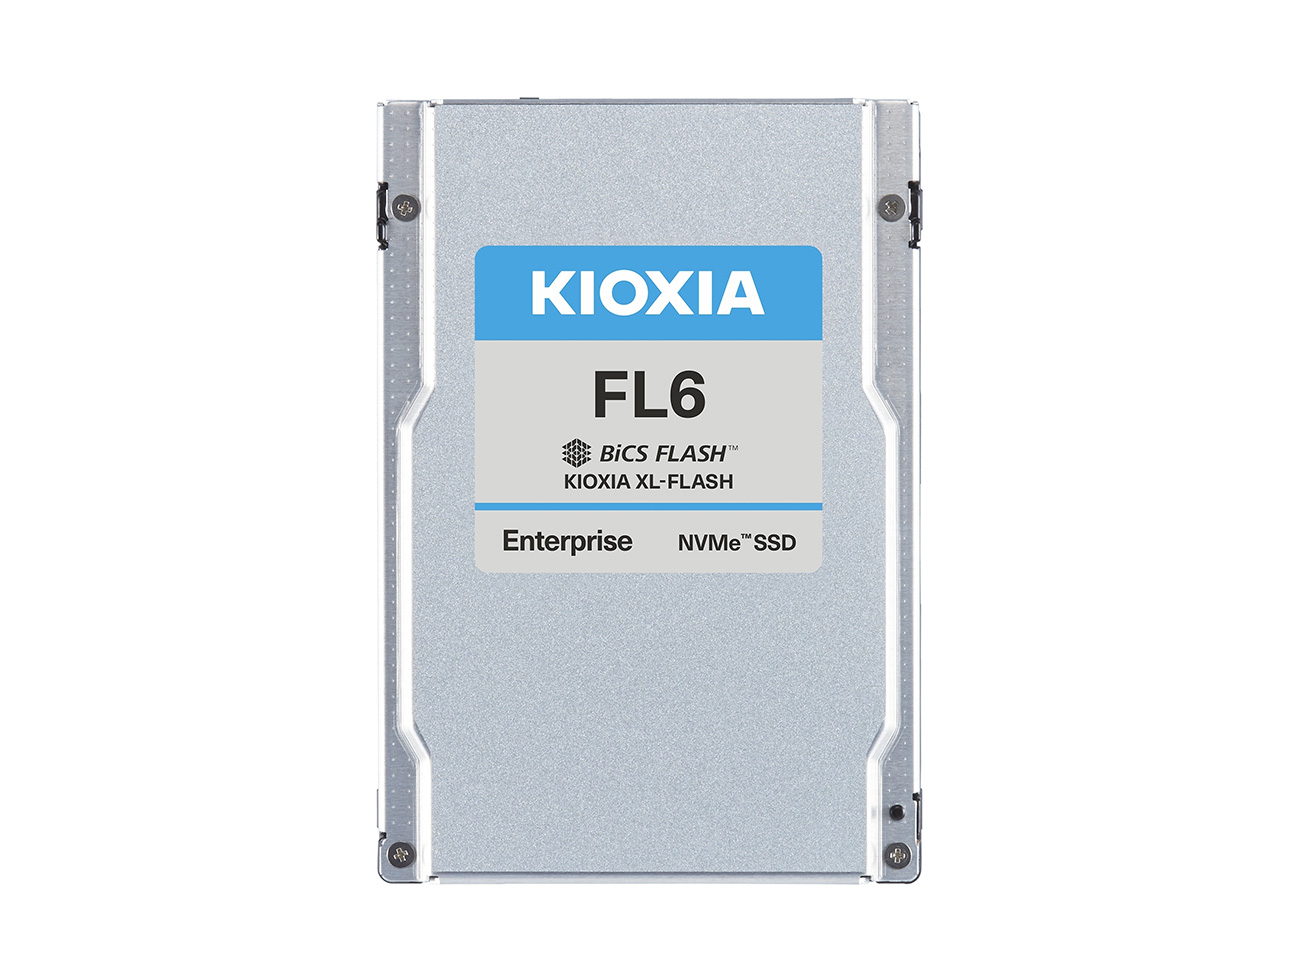 Новые накопители Kioxia FL6 корпоративного класса базируются на  XL-FLASH